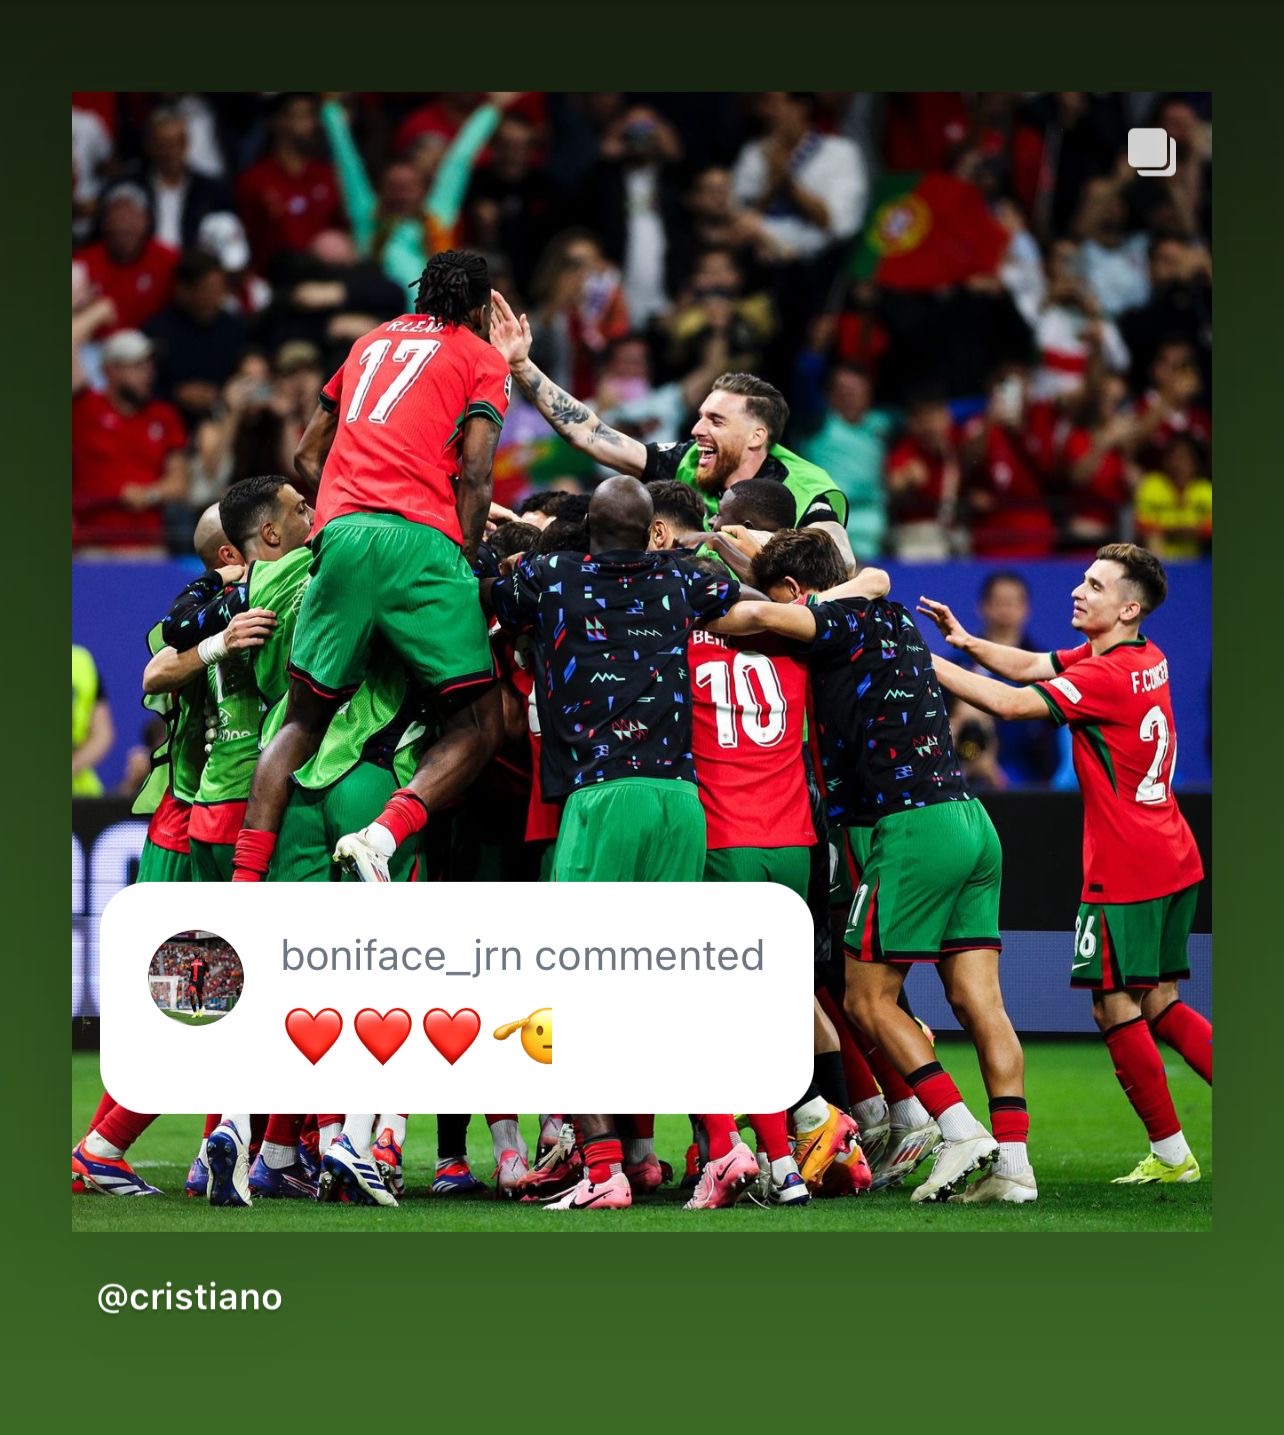 Boniface comments on Ronaldo’s post